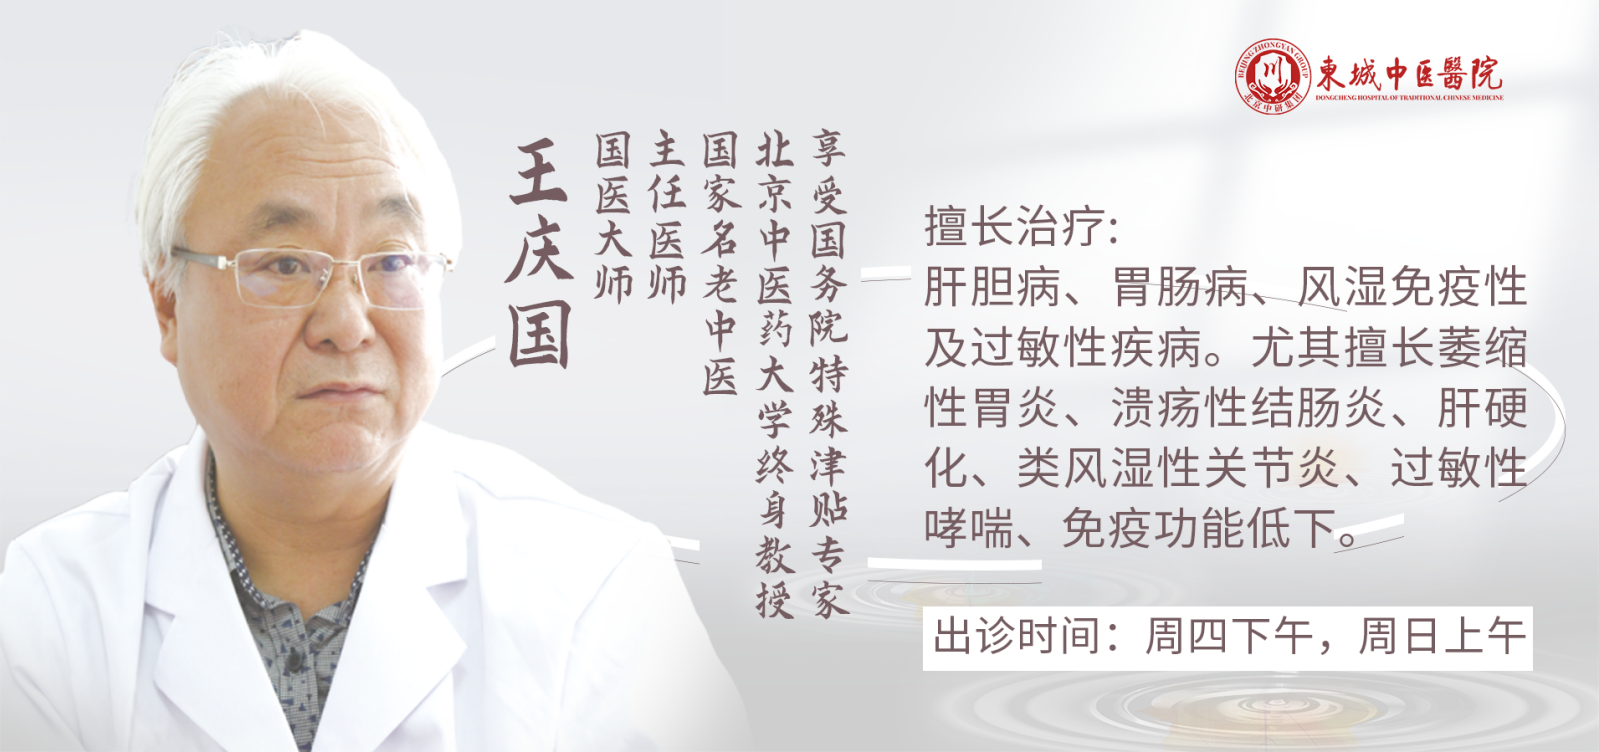 国医大师、东城中医医院特聘专家王庆国做客 健康北京 养肝就是养命